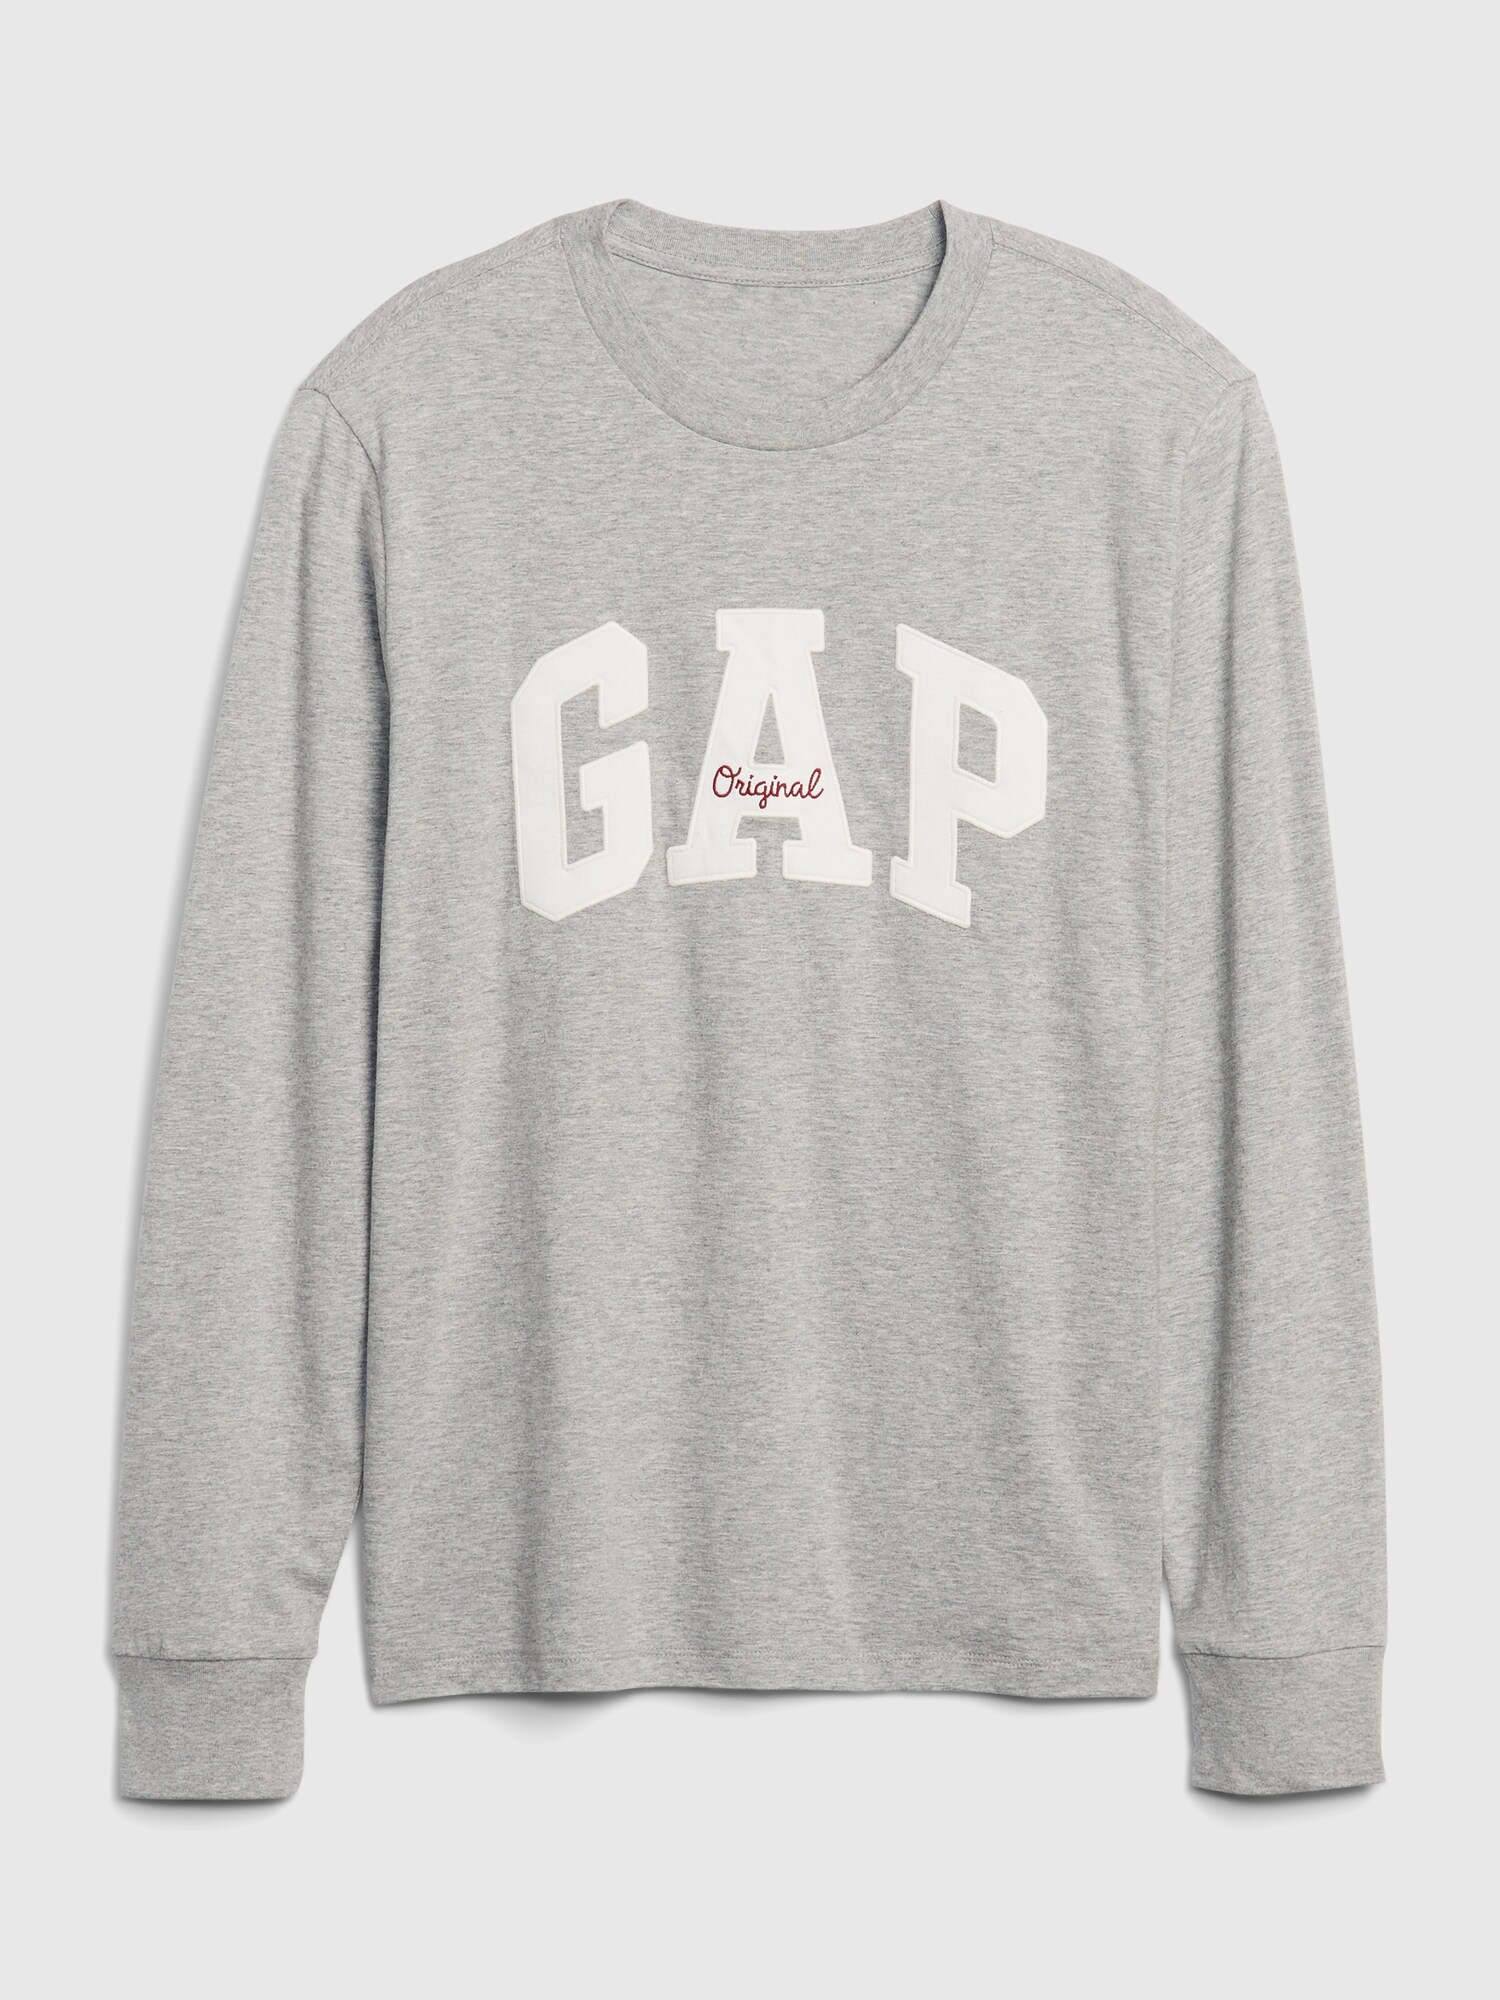 Gap Logo Uzun Kollu T-Shirt. 5